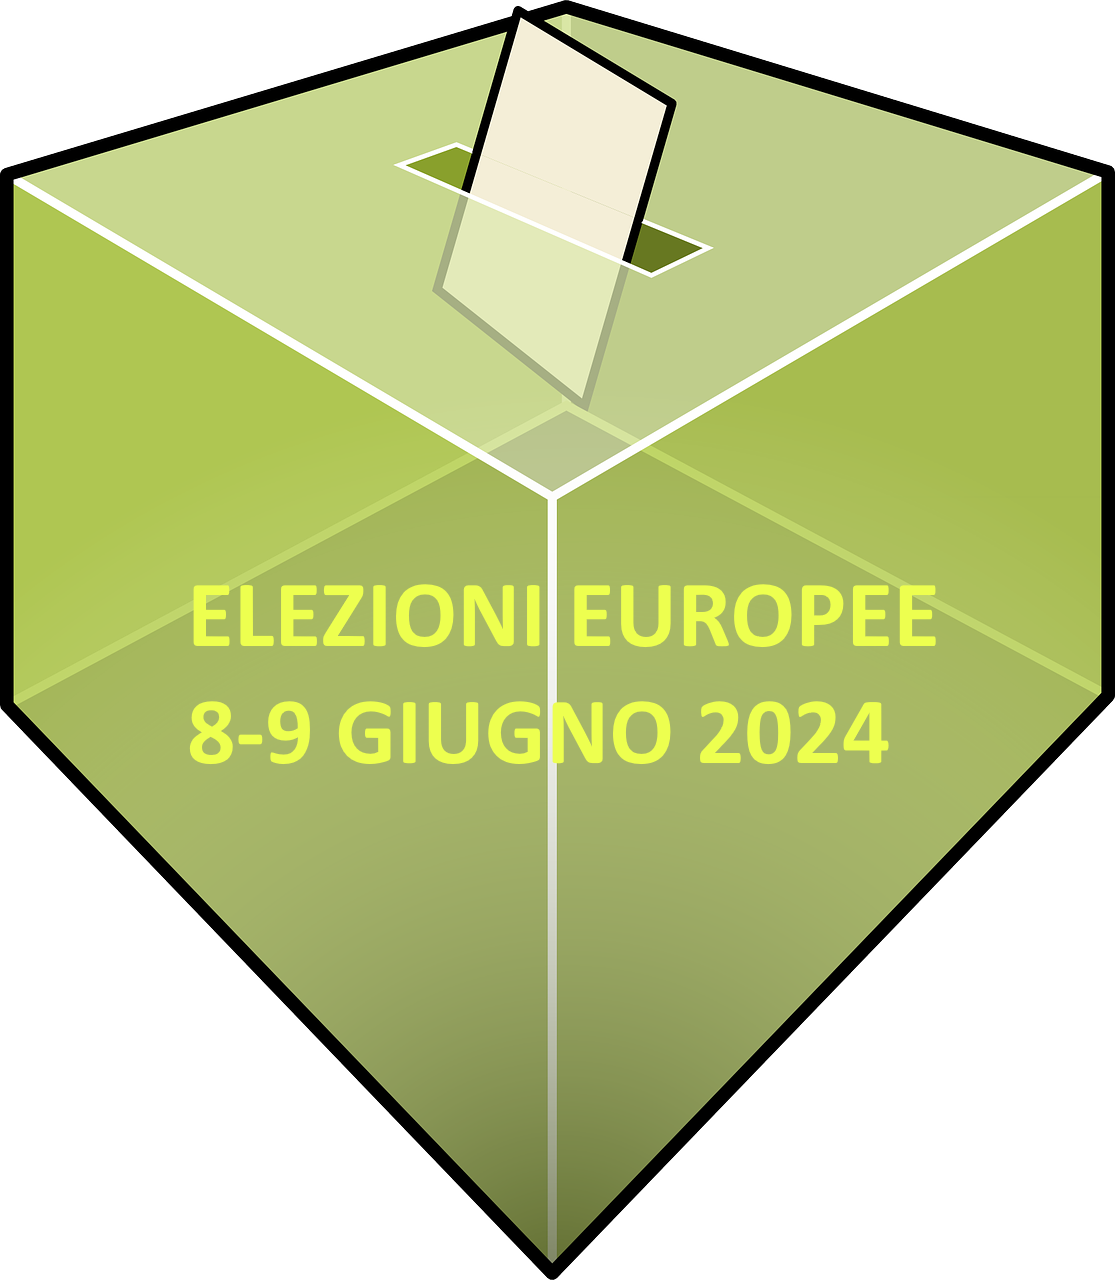 Elezioni europee del  8-9 giugno 2024 - Esercizio diritto di voto da parte dei cittadini U.E.